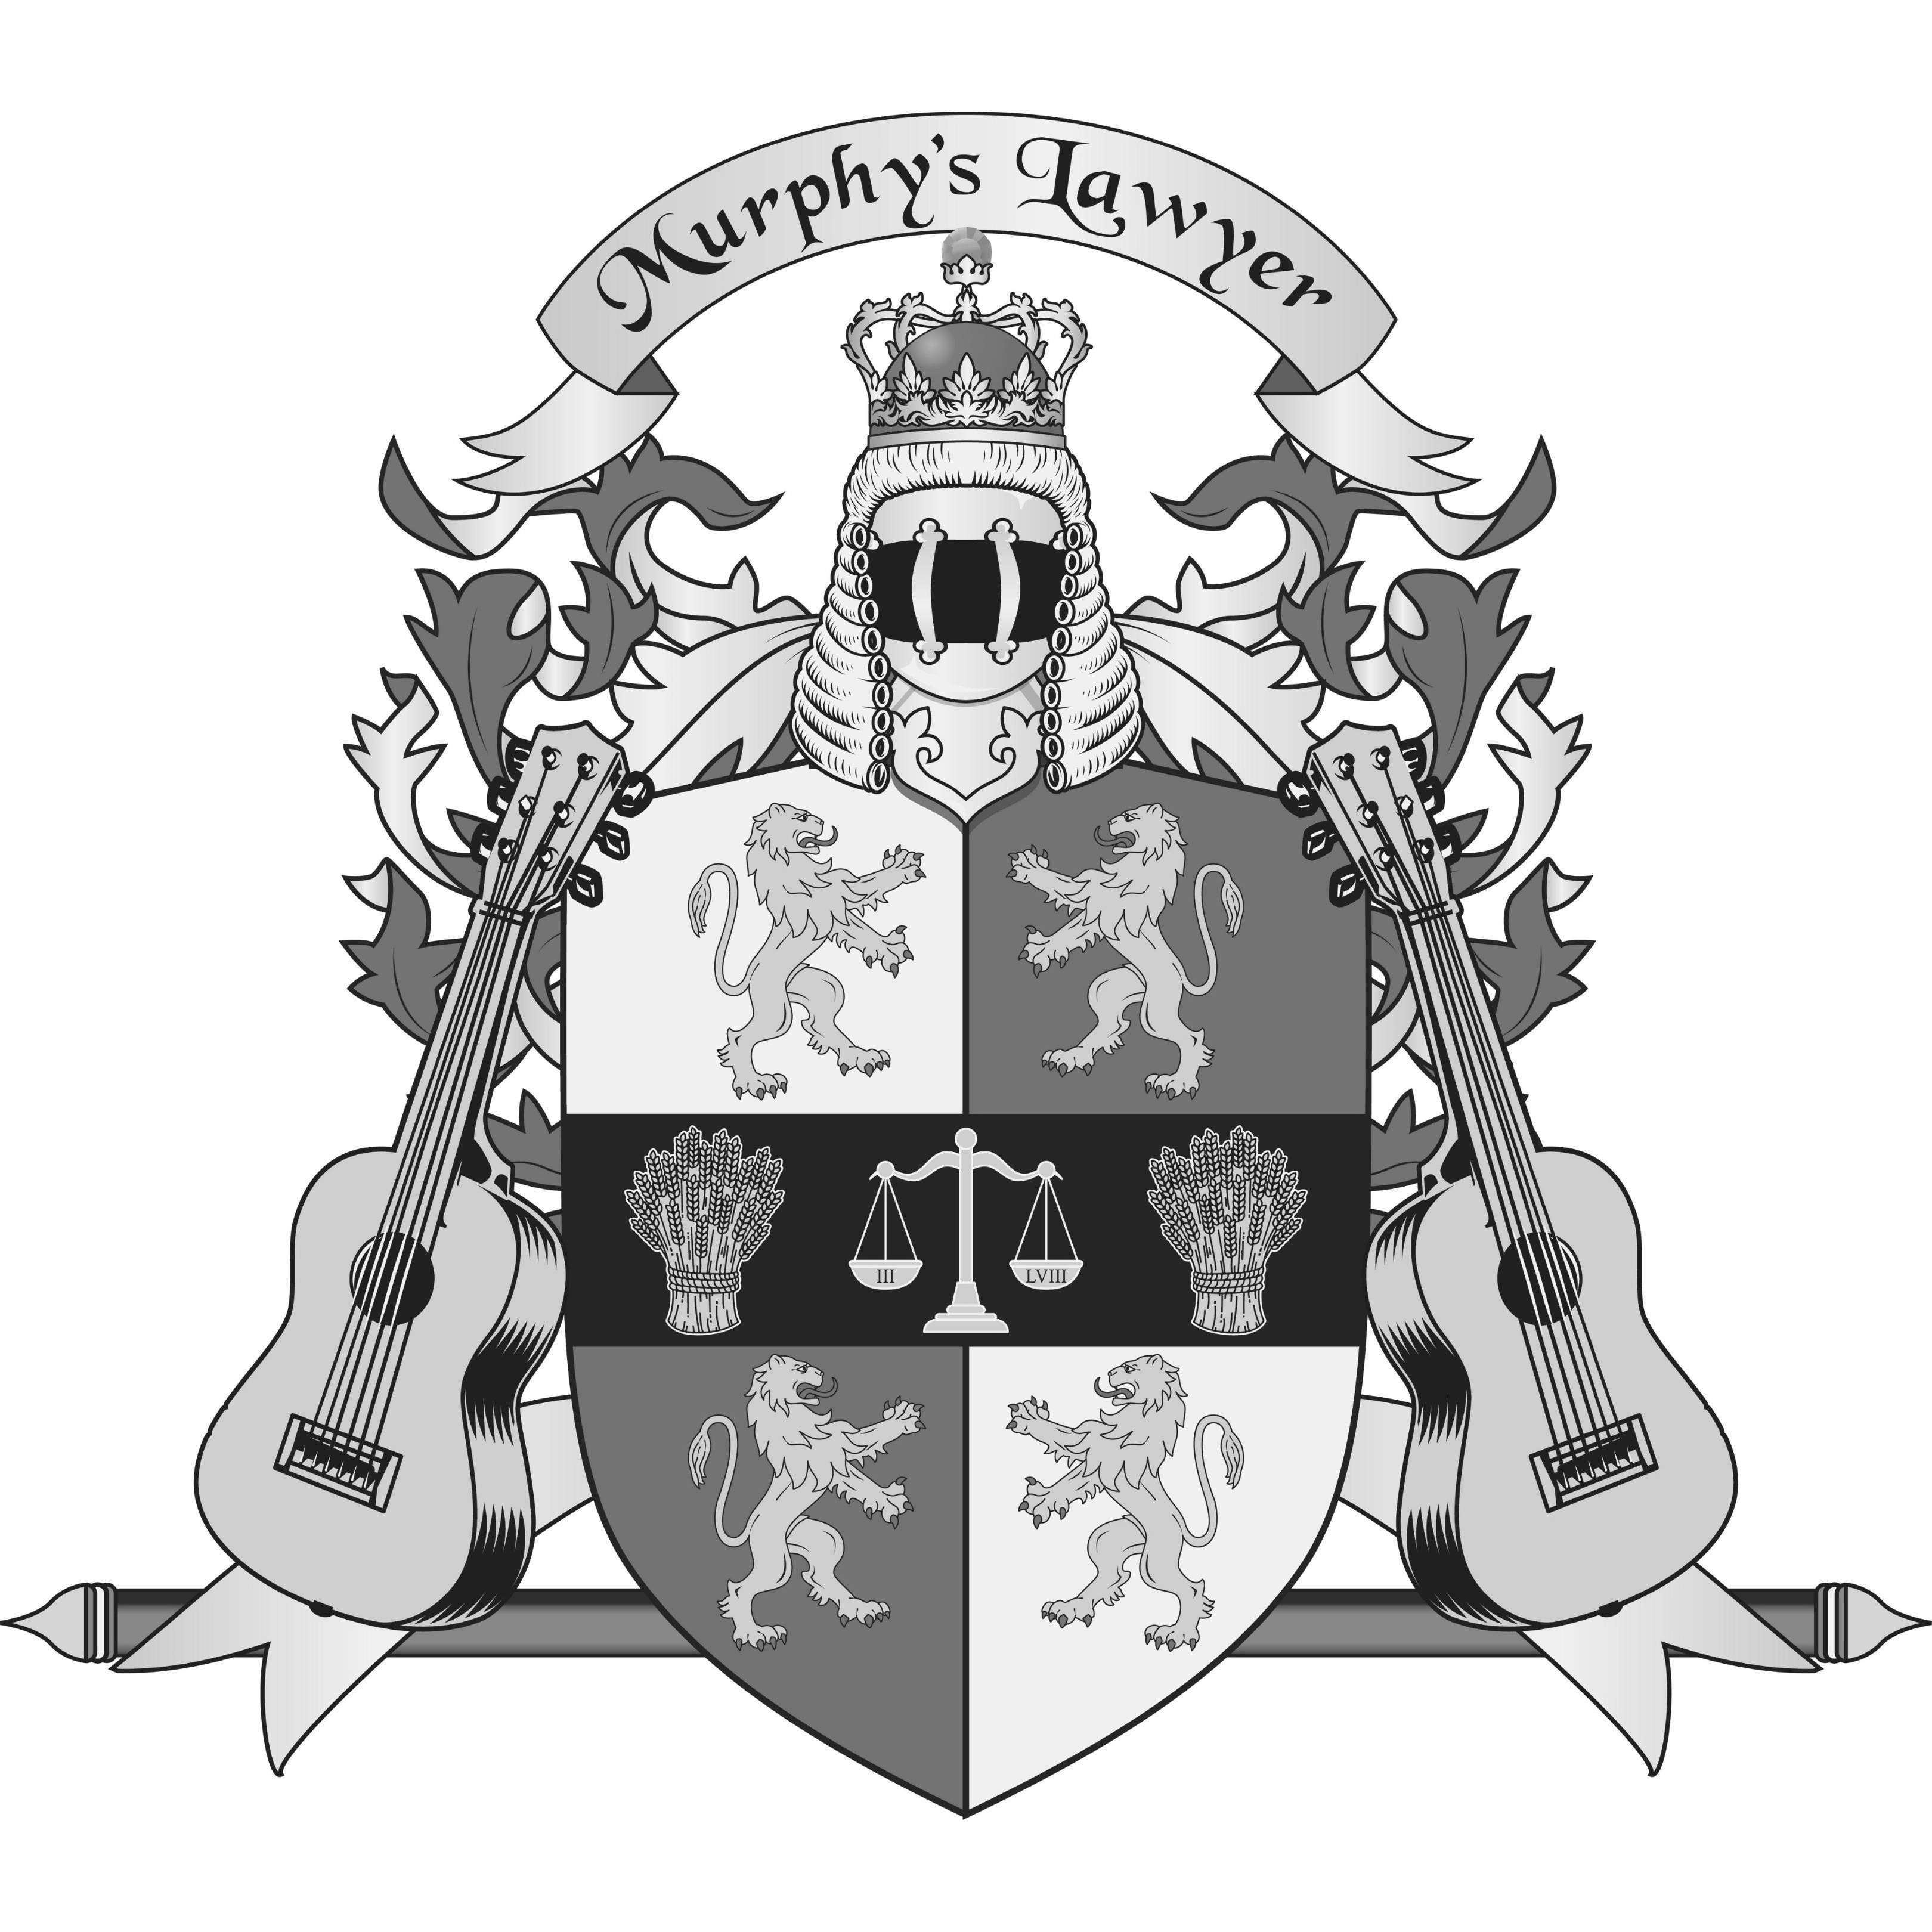  MURPHY'S LAWYER; III; LVIII